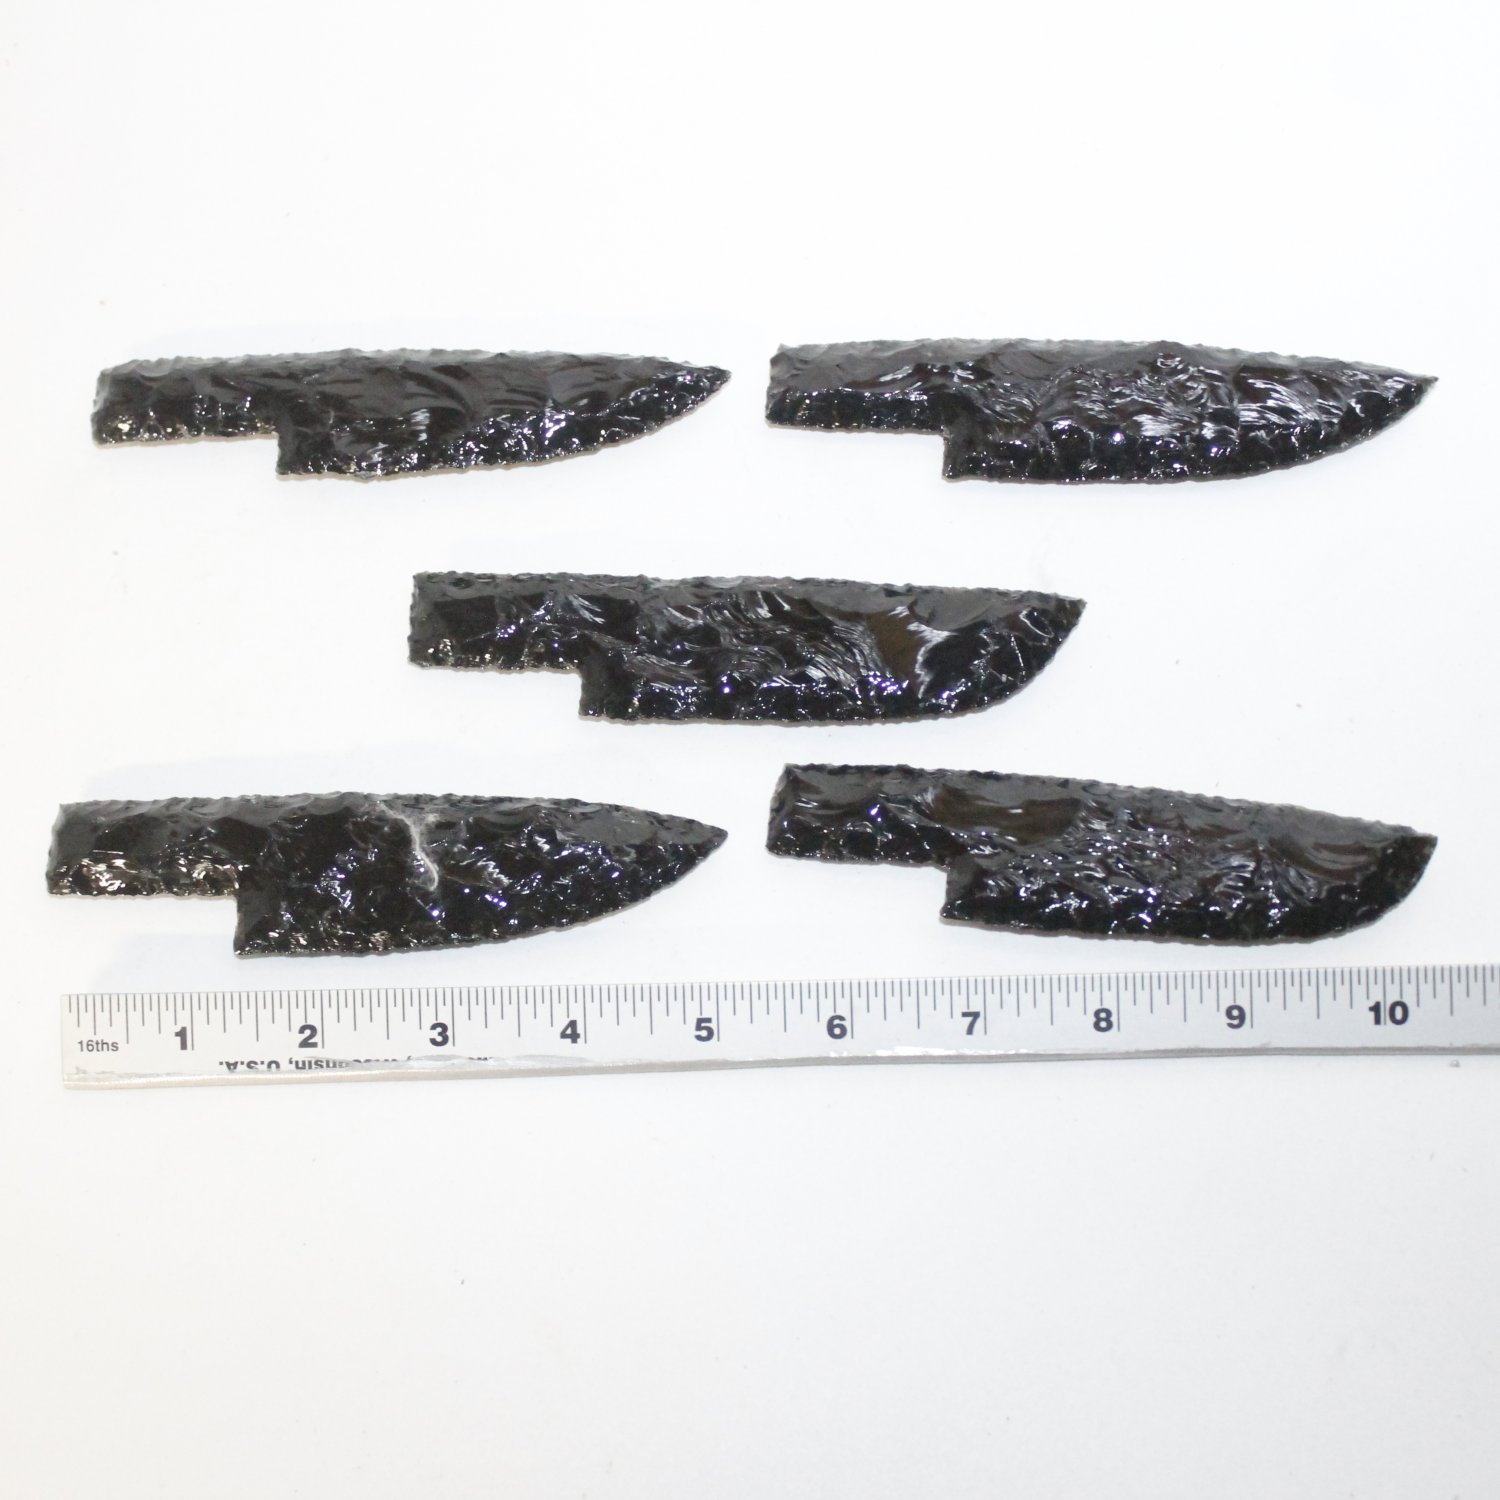 sharpening obsidian knife